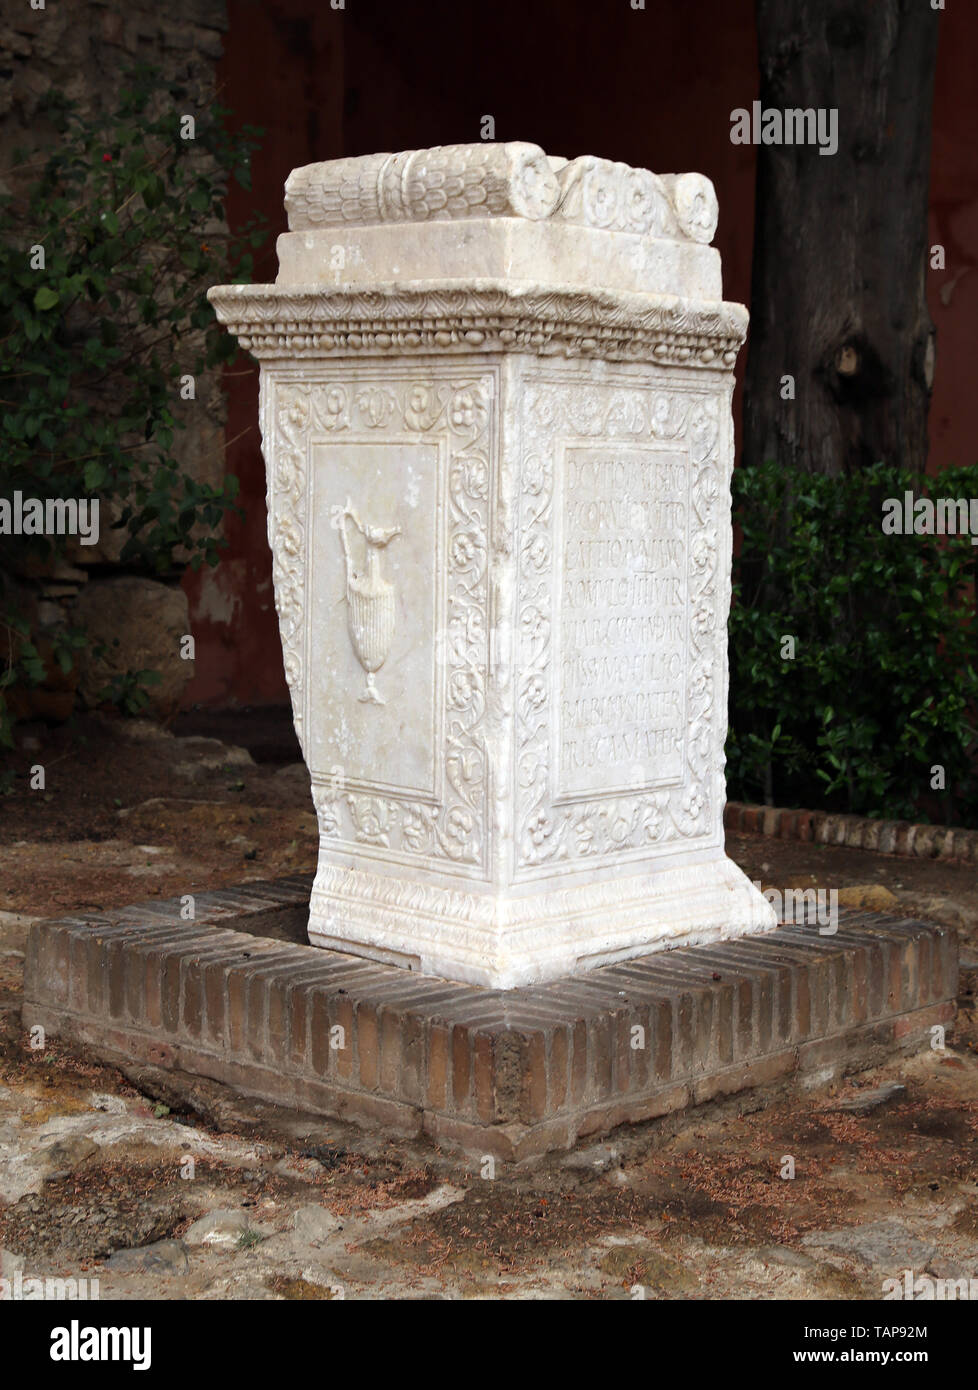 Spanien. Sevilla. Alcazar. Römischen grabkunst Altar mit der Inschrift. Unbekannter Herkunft. Stockfoto